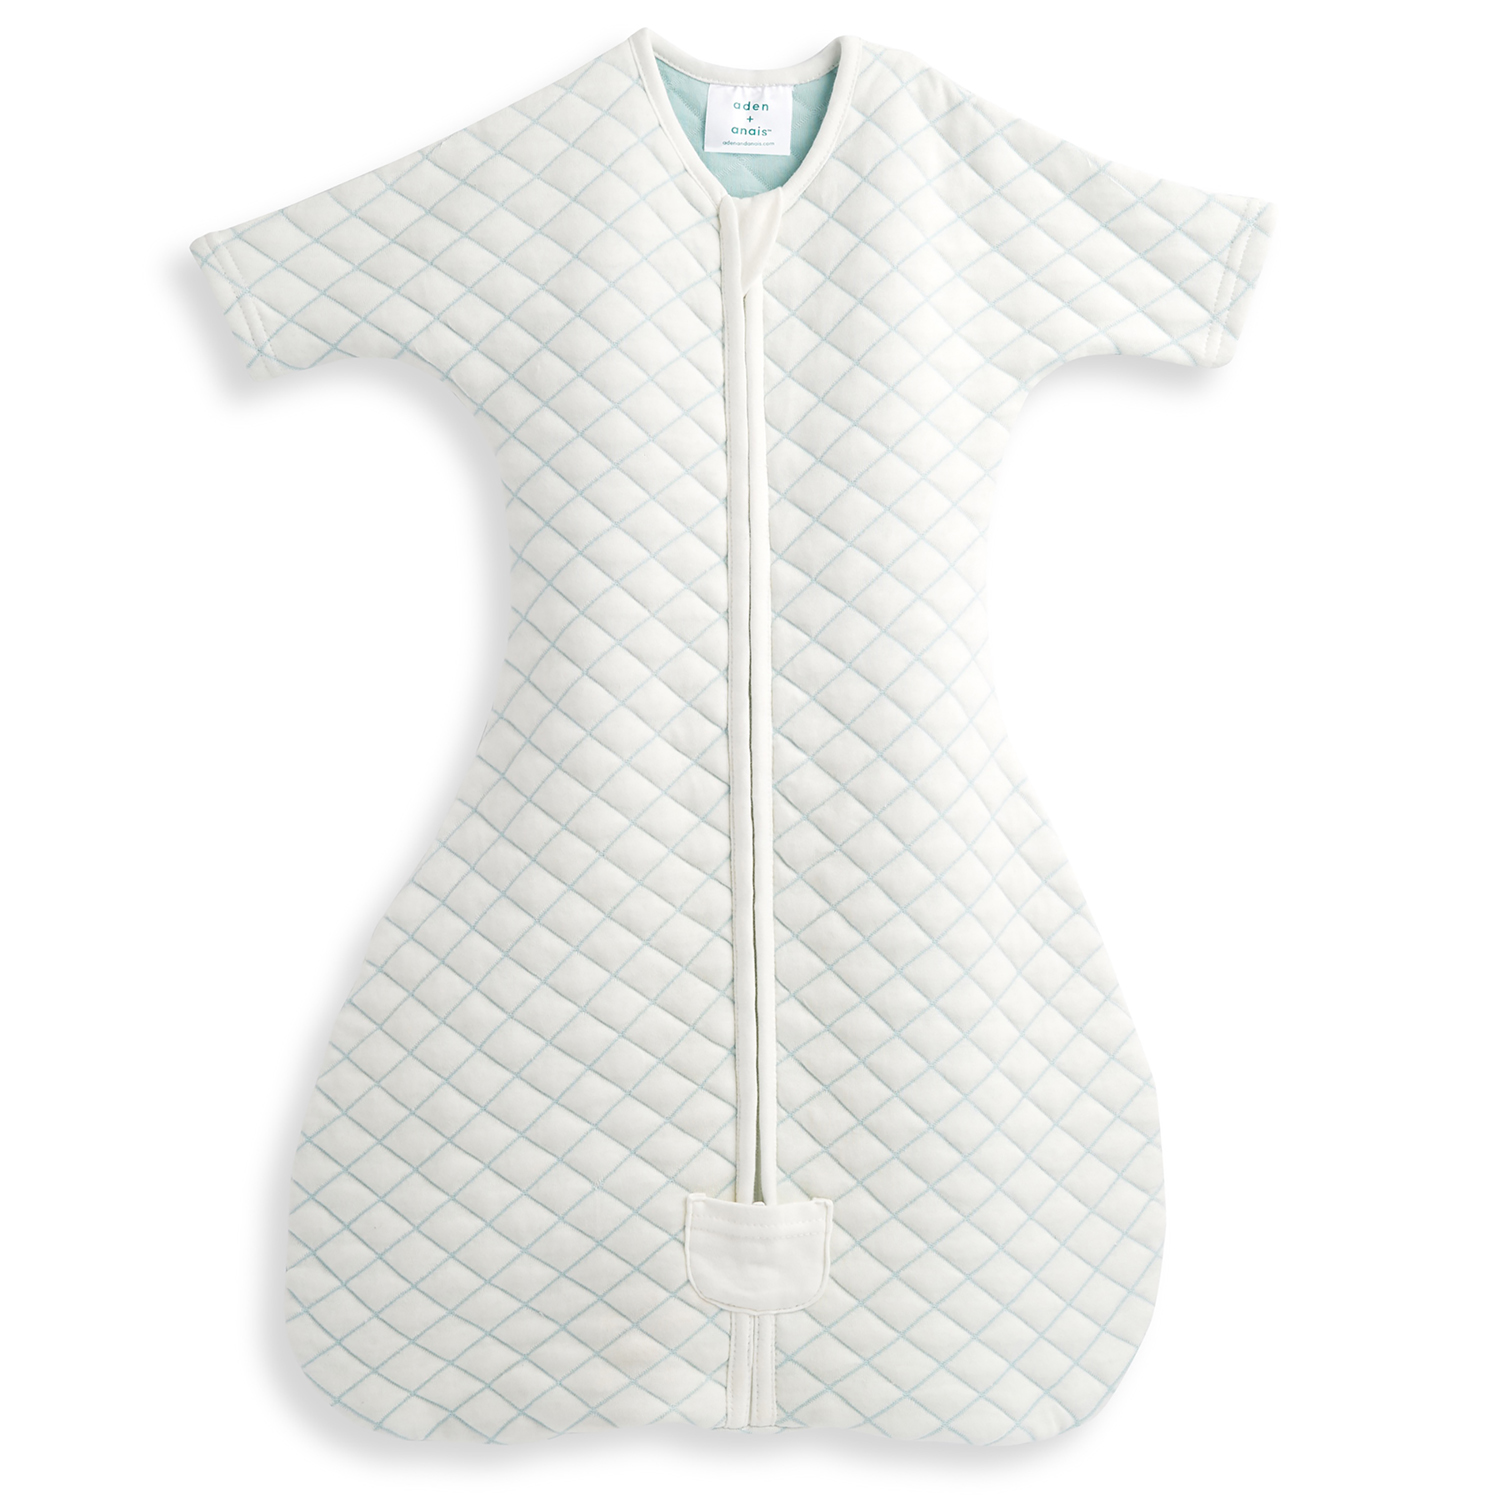 Спальный комбинезон snug fit sleeved cream/mint Aden & Anais детский